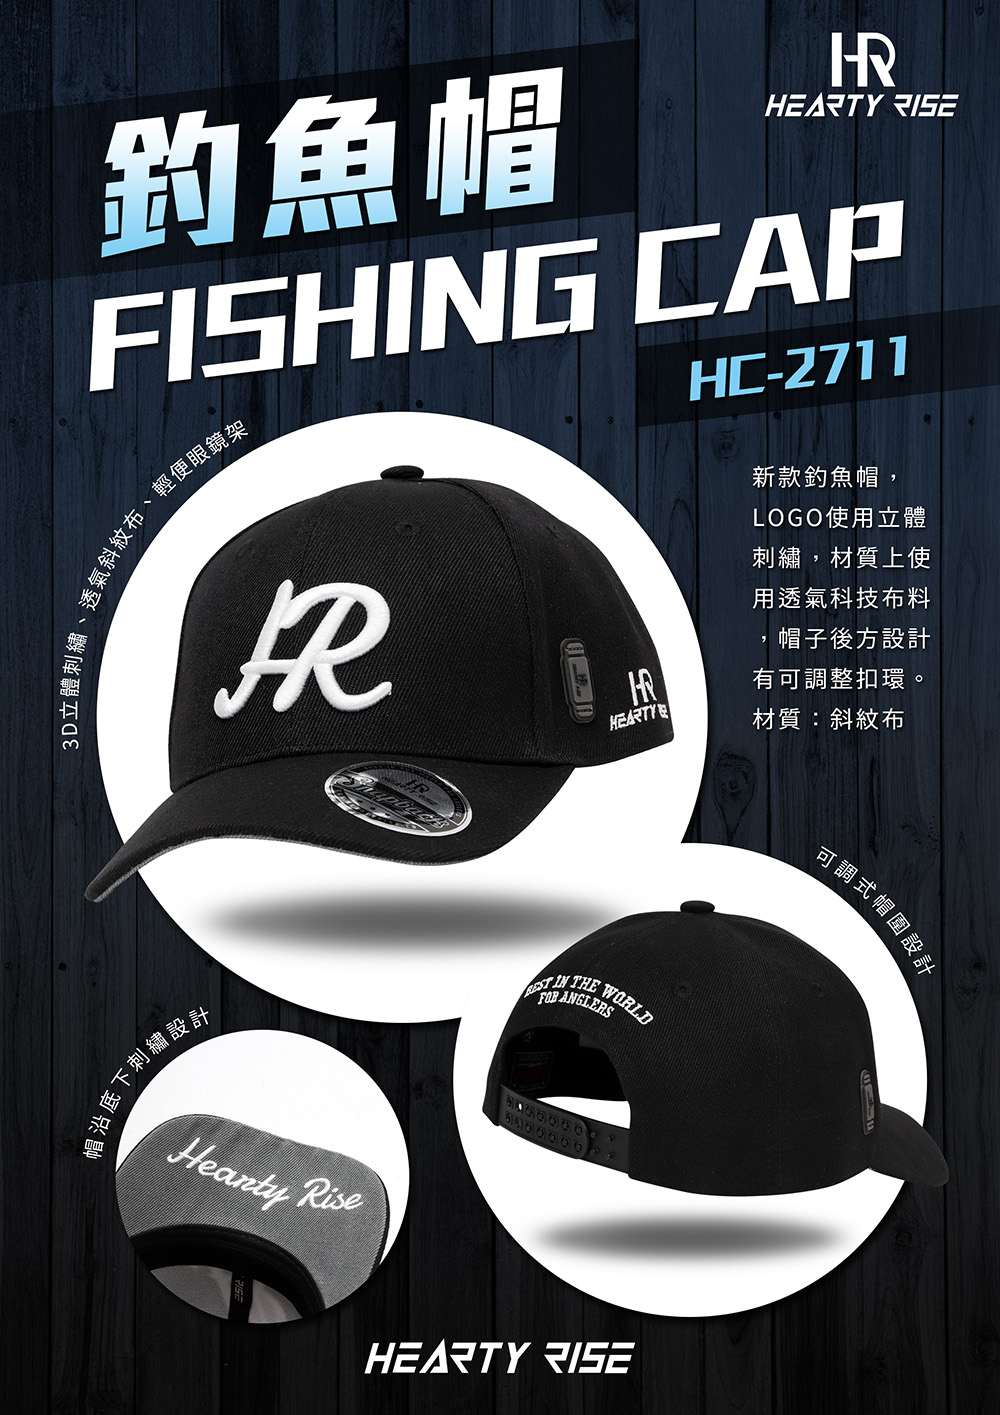 HR 釣魚帽 HC-2711 1000